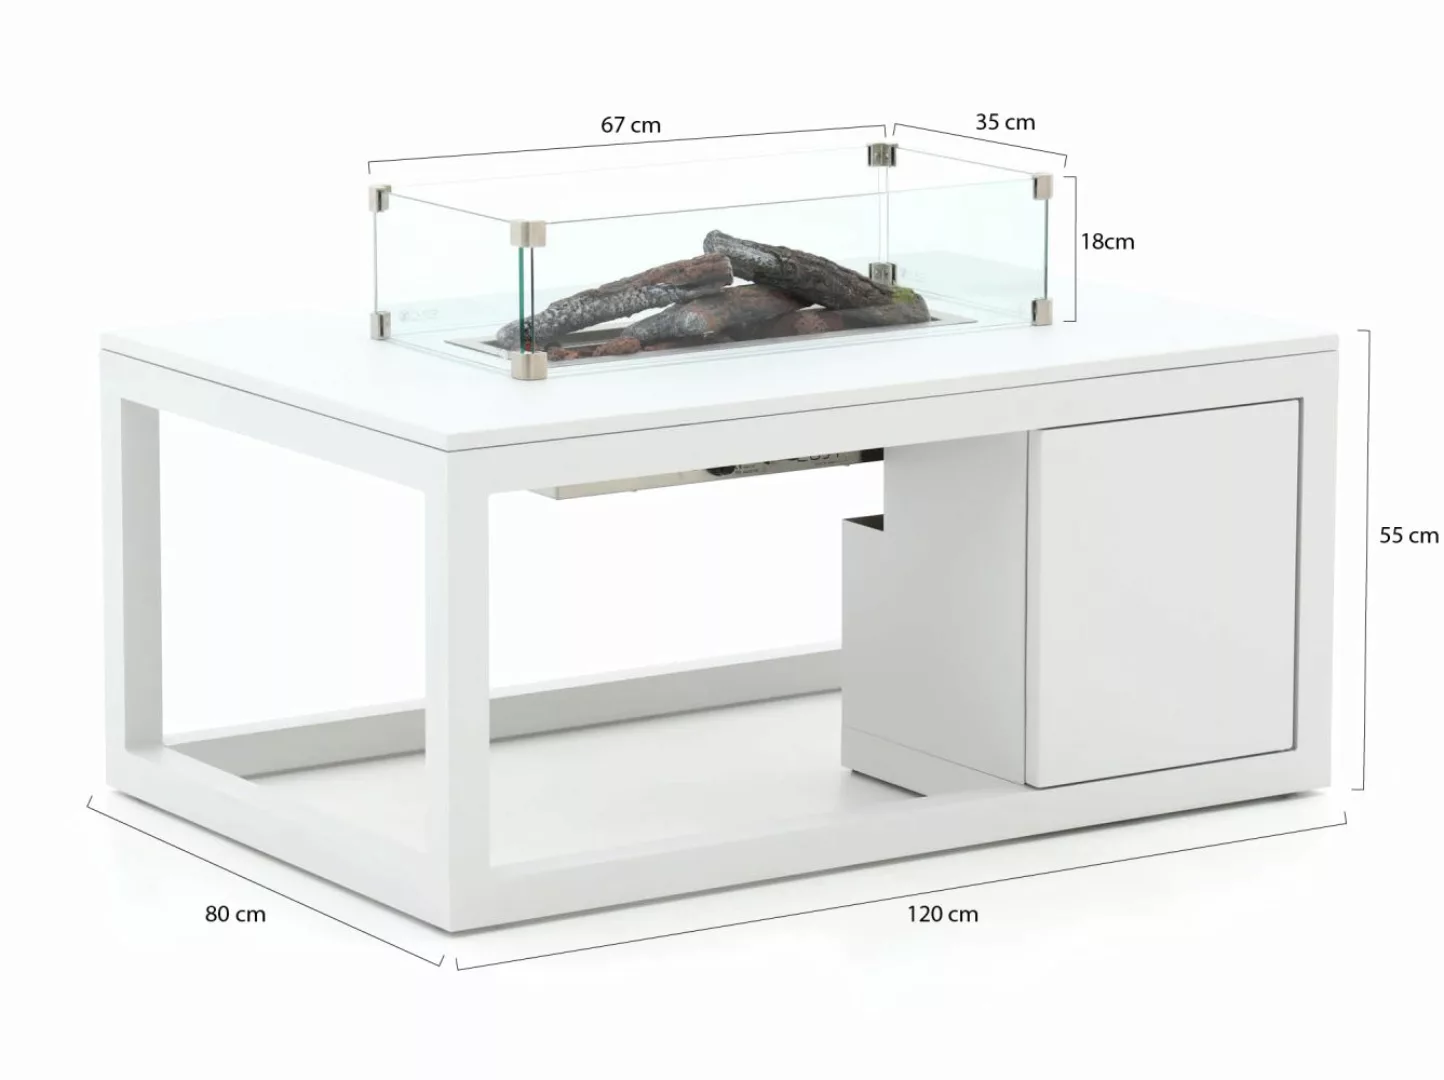 Cosiraw Lounge Feuertisch 120x80x55 cm günstig online kaufen